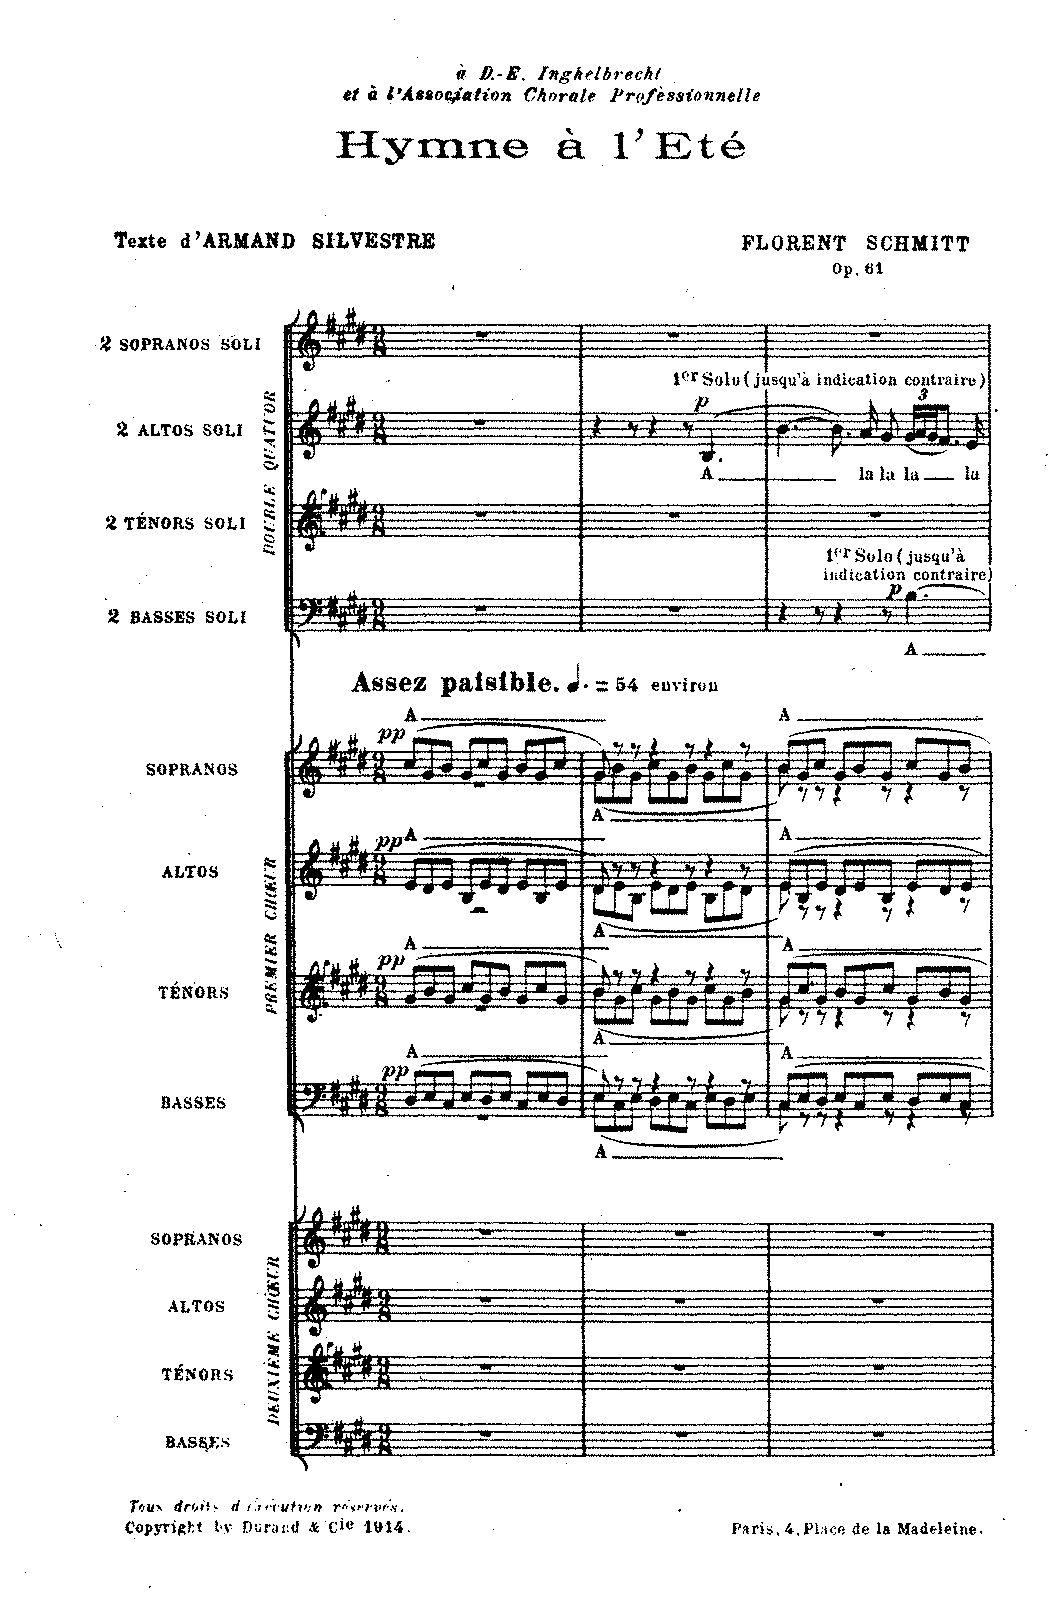 Hymne à l'Eté, Op.61 (Schmitt, Florent) - IMSLP